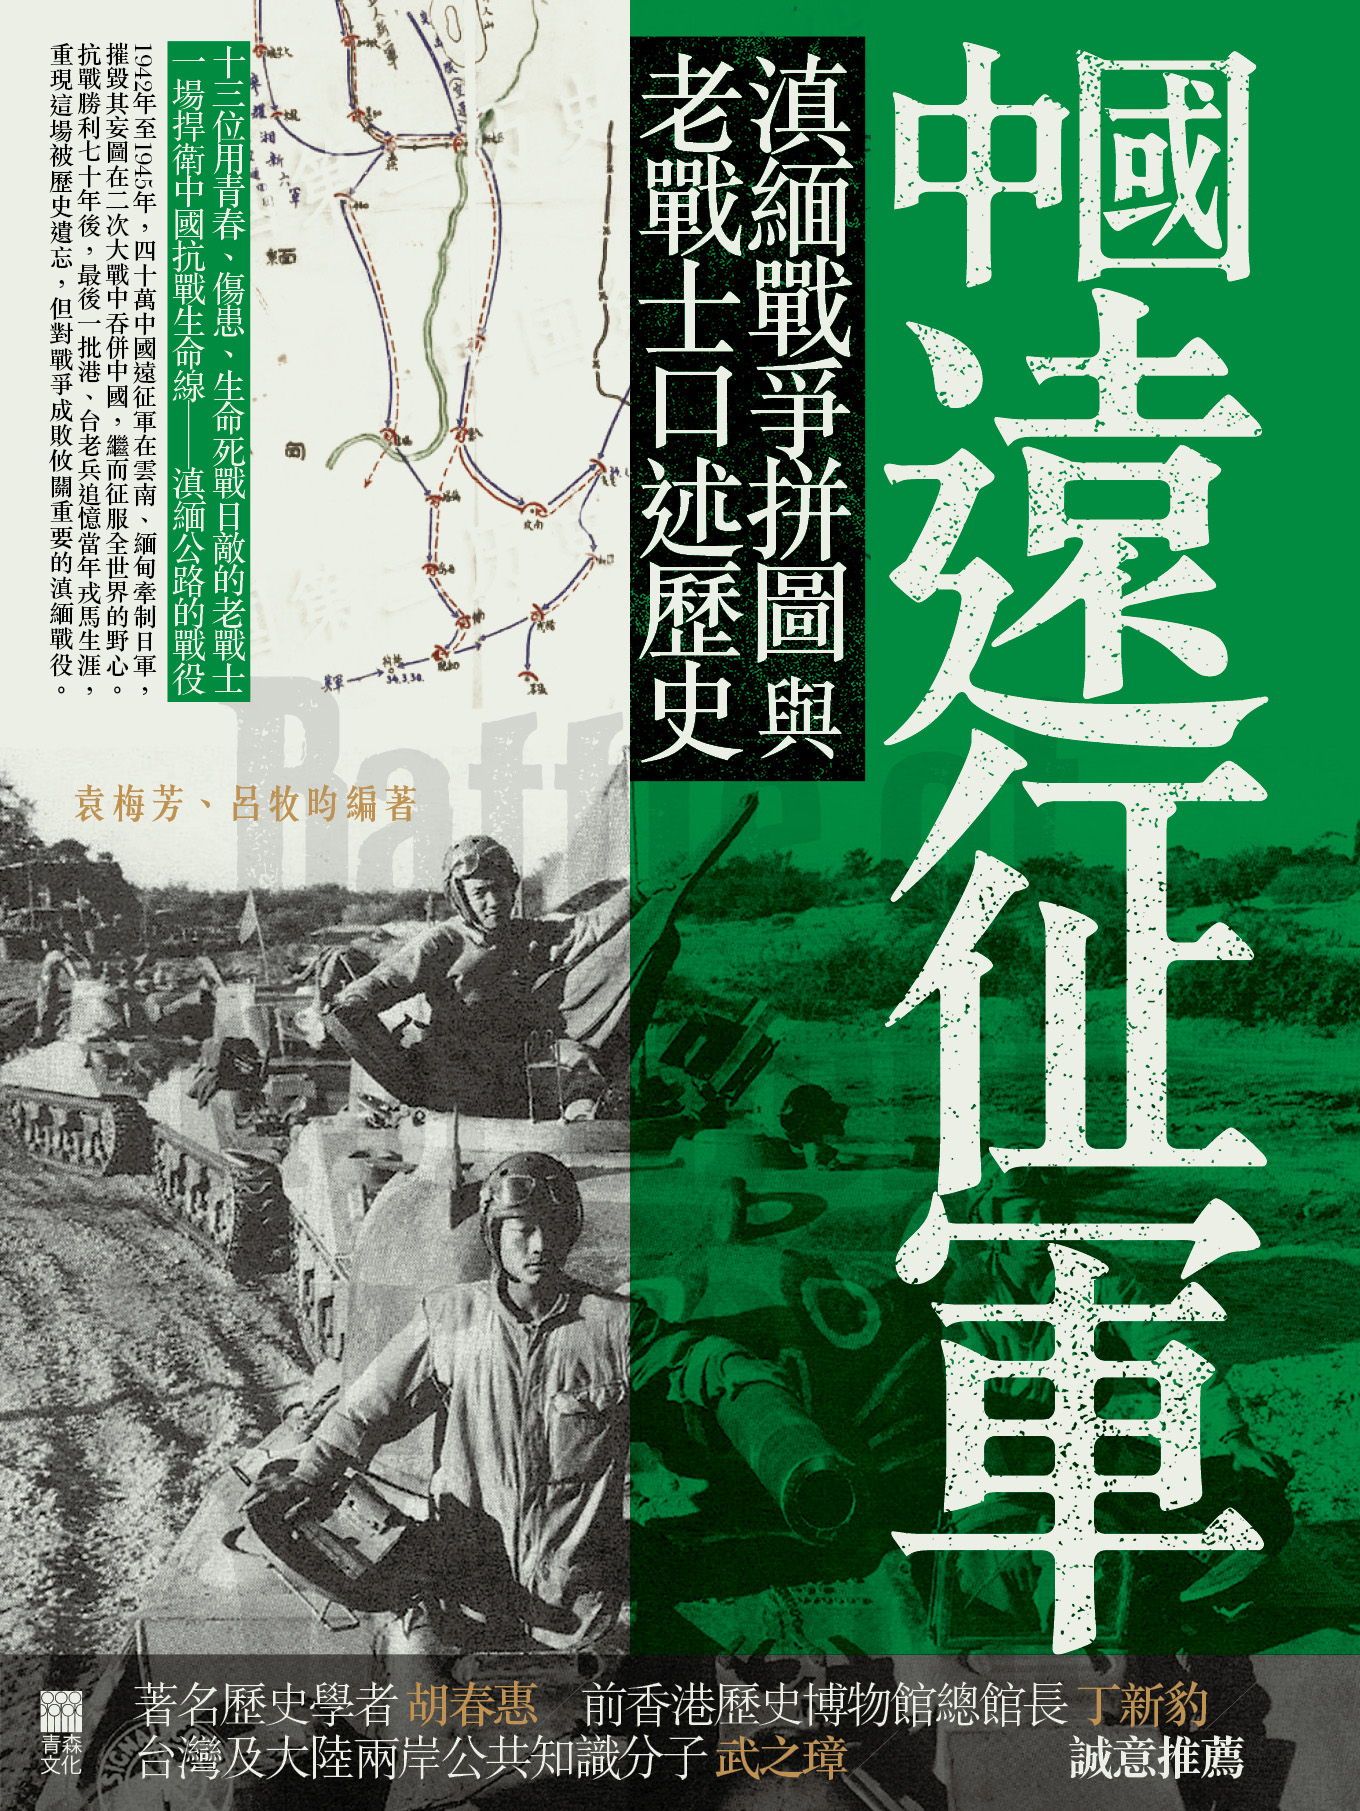 中國遠征軍──滇緬戰爭拼圖與老戰士口述歷史